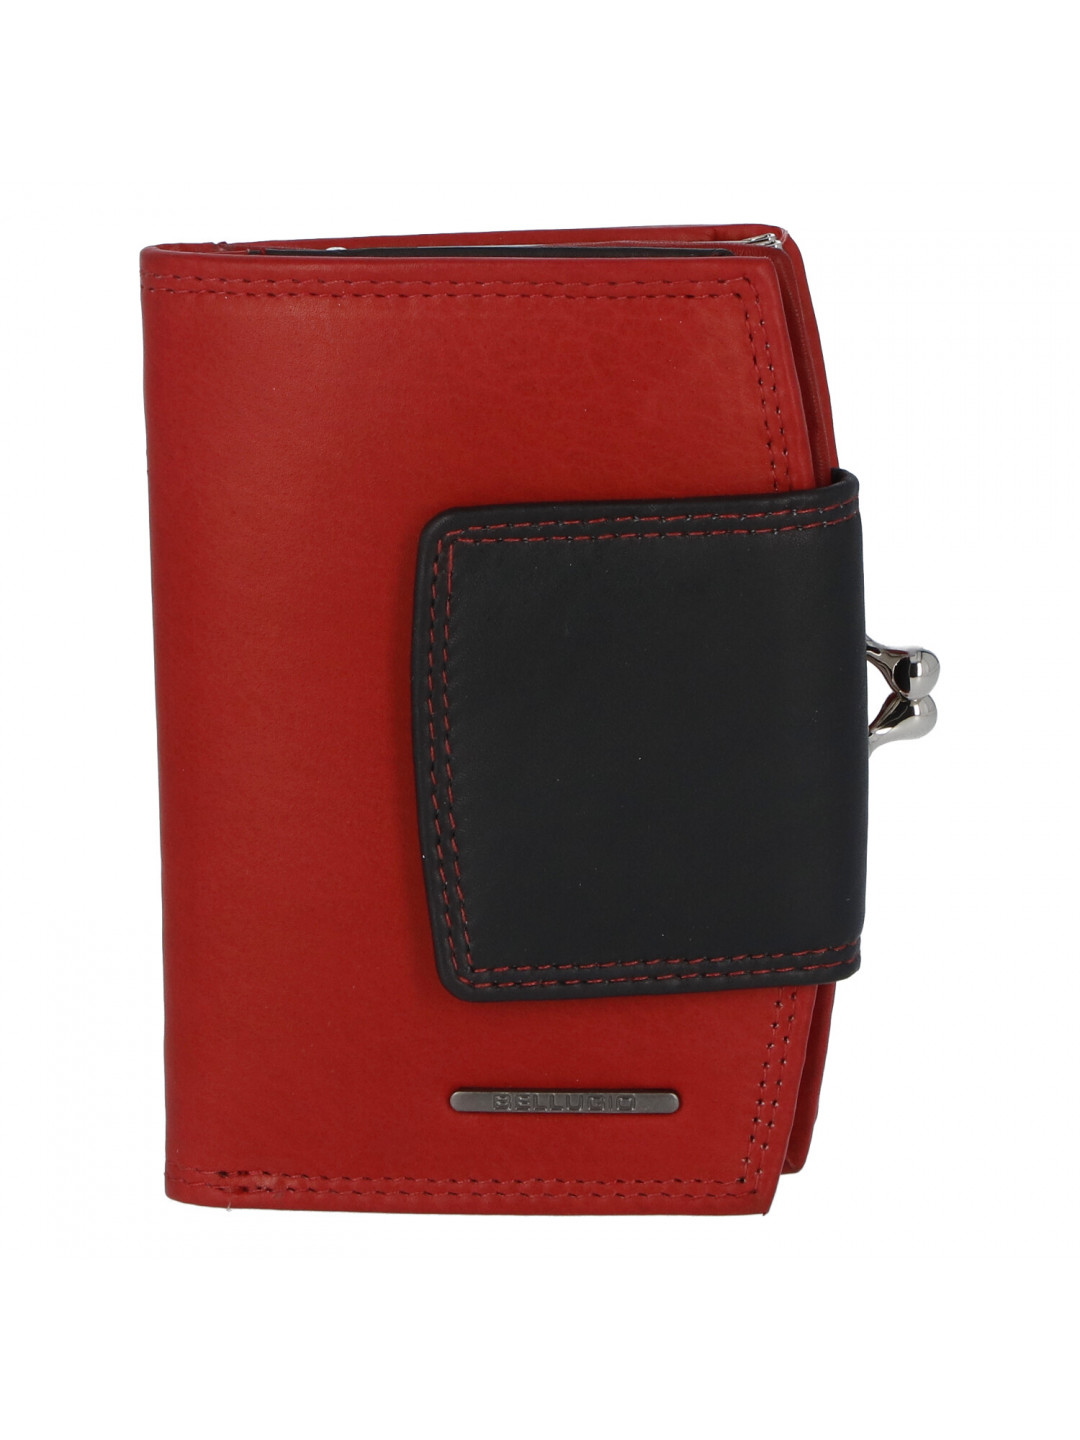 Praktická dámská peněženka Bellugio Clara červeno-černá